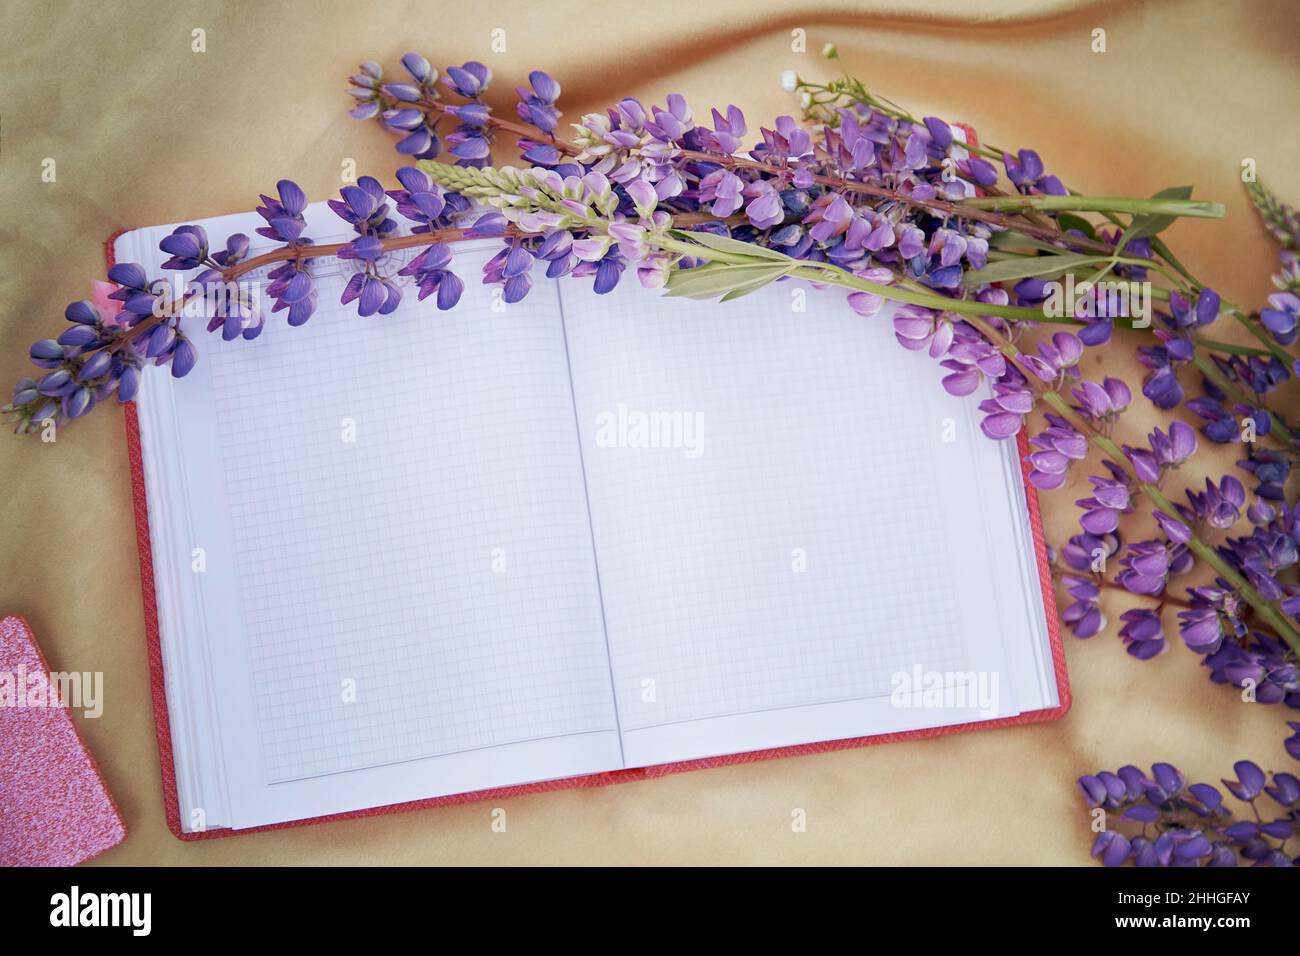 Offenes Notizbuch mit violetten Lupinenblumen auf goldenem Hintergrund. Picknick im Sommer. Für Text platzieren. Nähe zur Natur, Selbsterkennungskonzept Stockfoto